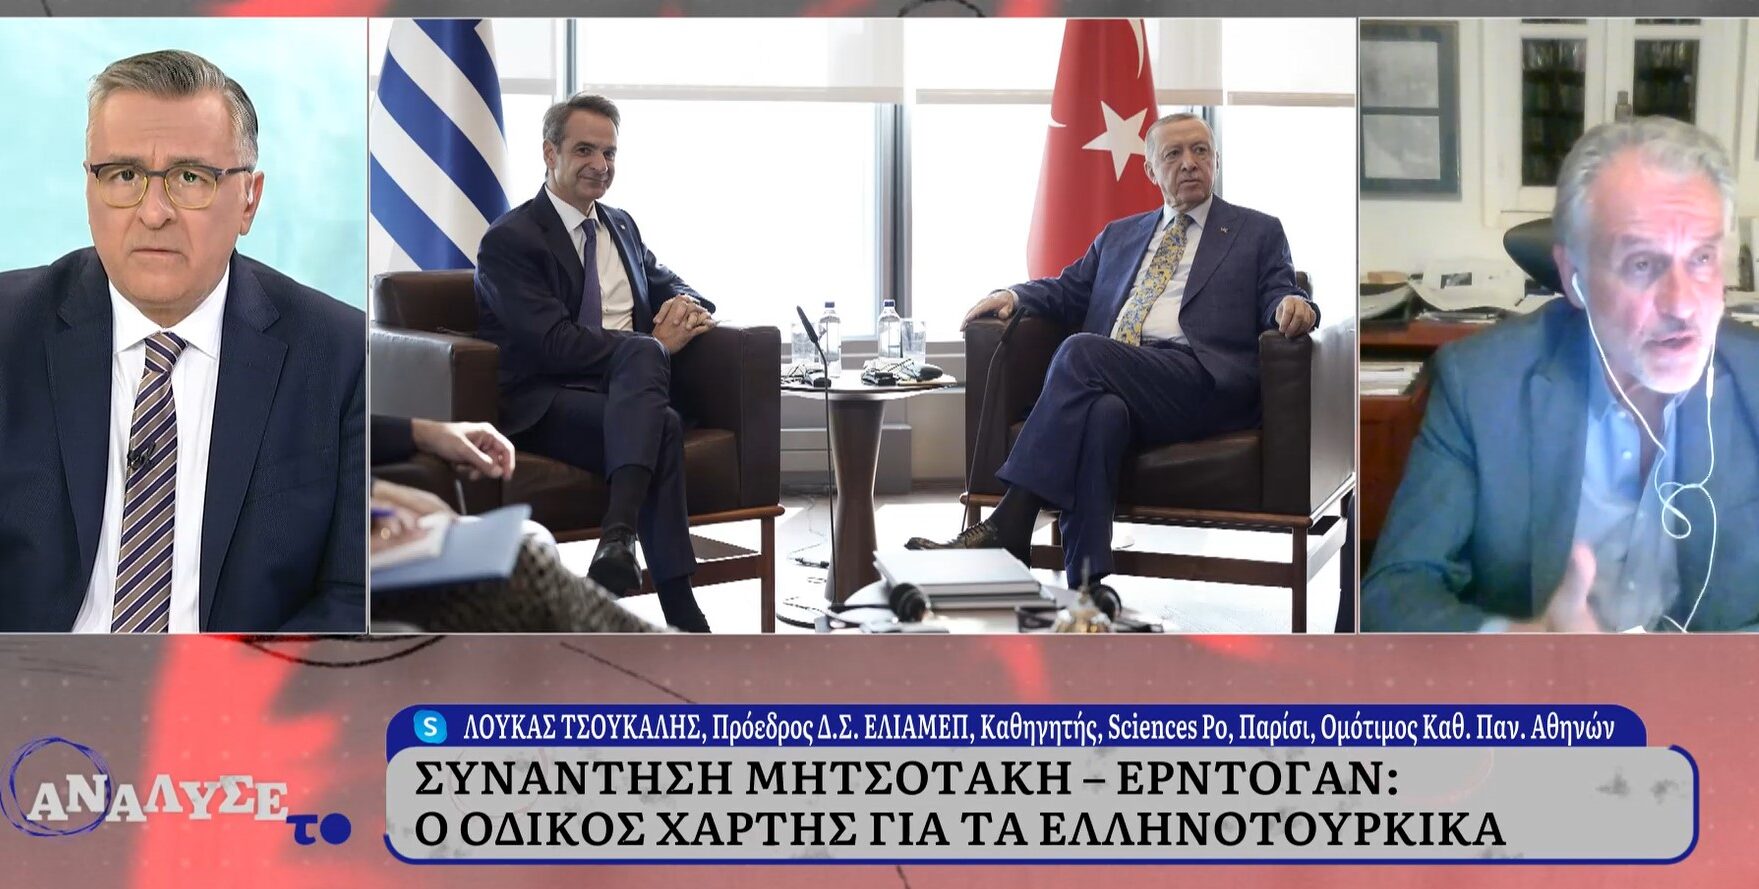 Τσούκαλης στην ΕΡΤ: Ελλάδα και Τουρκία έχουν τη δική τους αντίληψη για το ρόλο τους στο γεωπολιτικό σύστημα